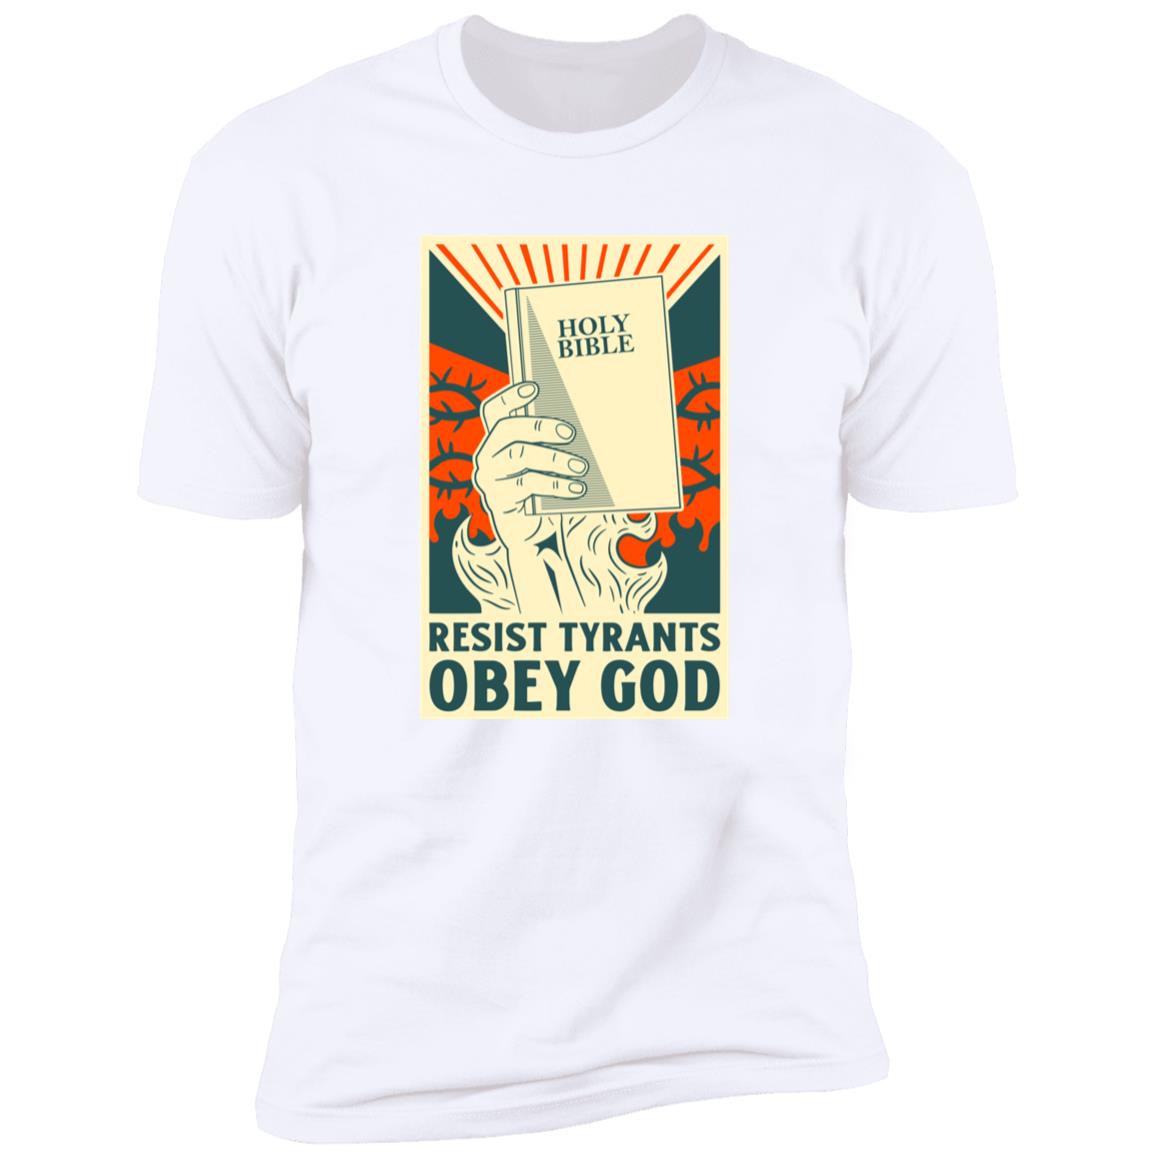 Resist Tyrants, Obey God - Bible (Unisex Tee)